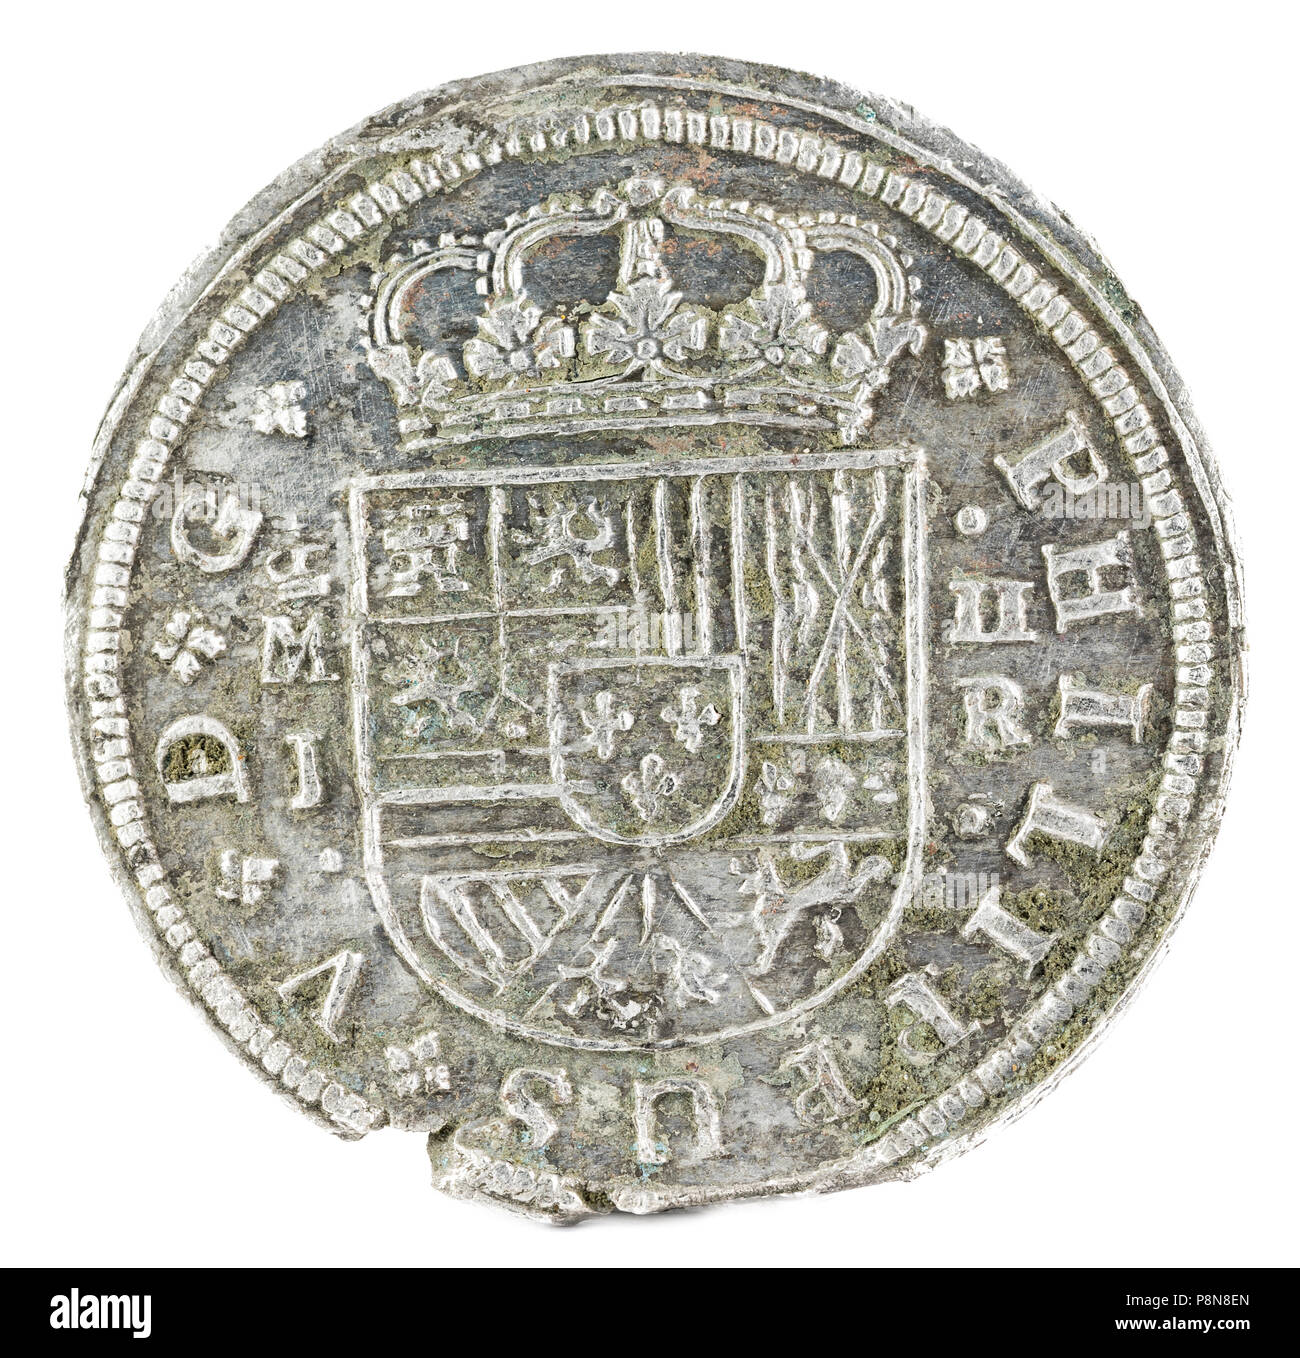 Antigua moneda de plata española del rey Felipe V. 1717. Acuñado en Madrid. 2 reales. Anverso. Foto de stock